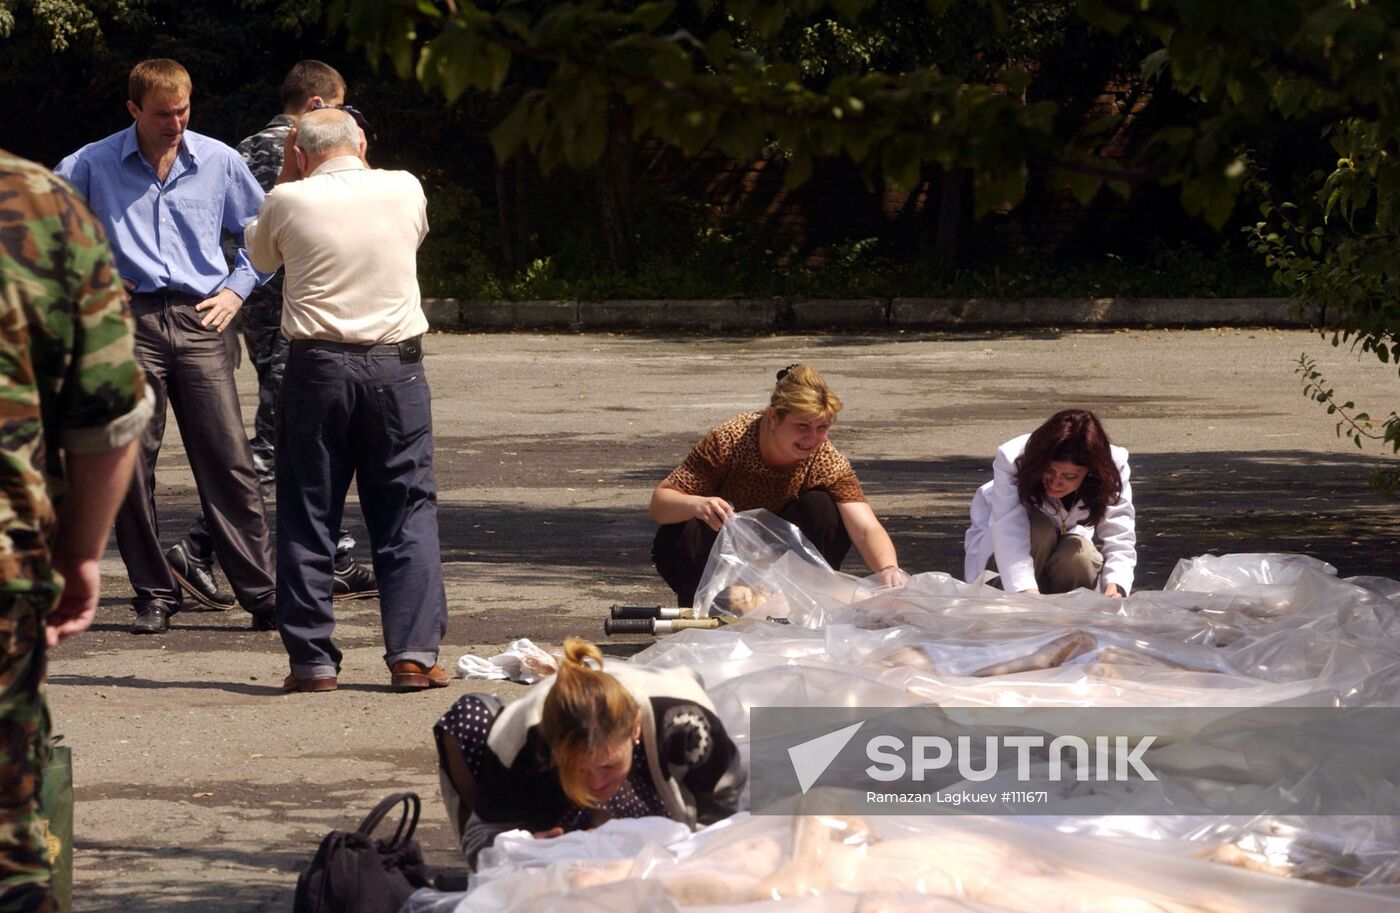 Dead Bodies Terrorist Act Beslan